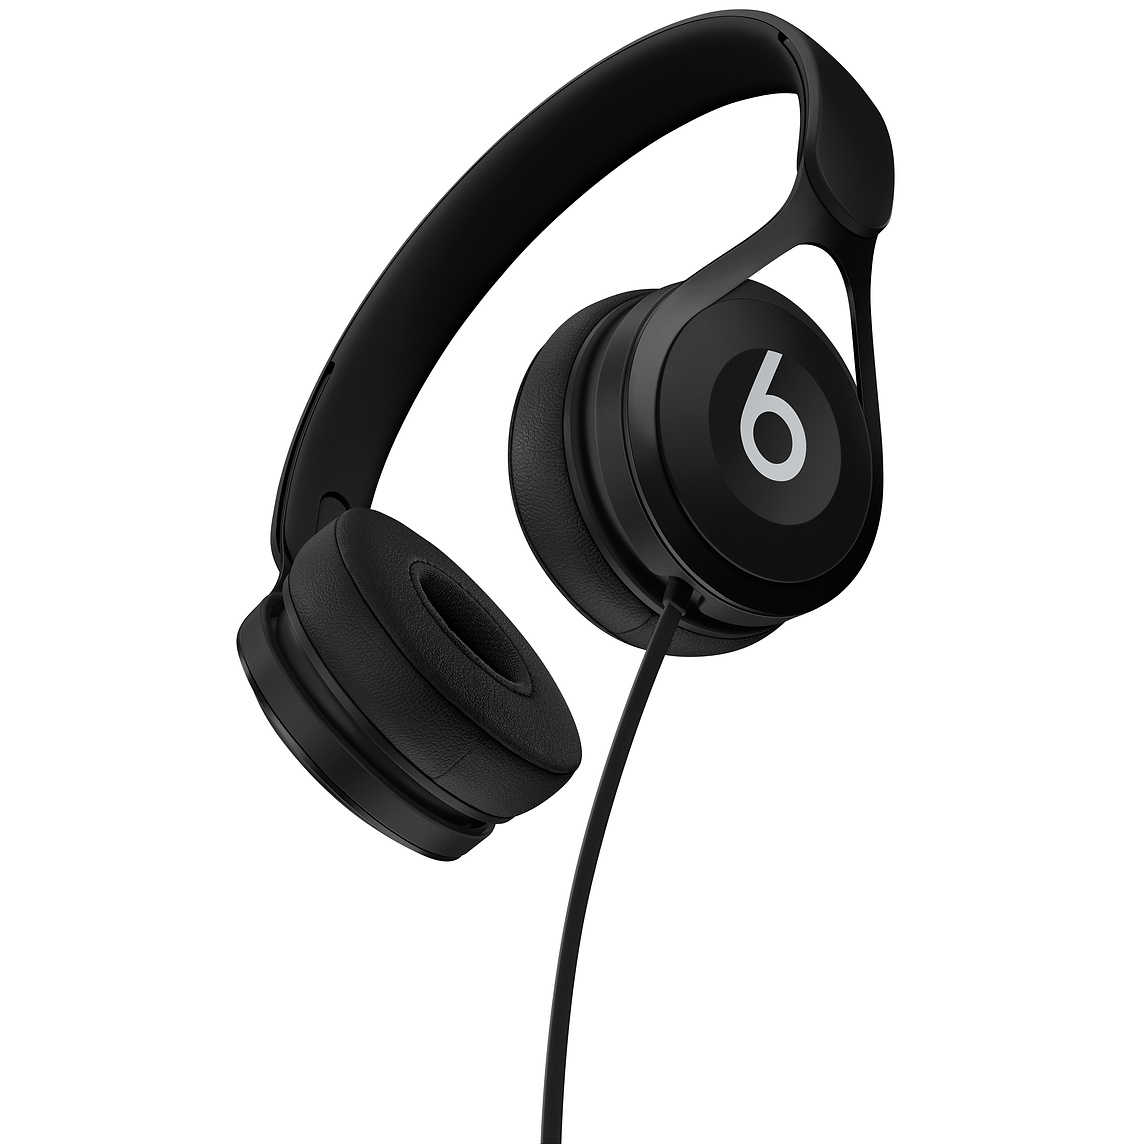 【Beats】EP 黑 耳罩式耳機 含線控可通話 ★ 免運 ★ 送收納袋